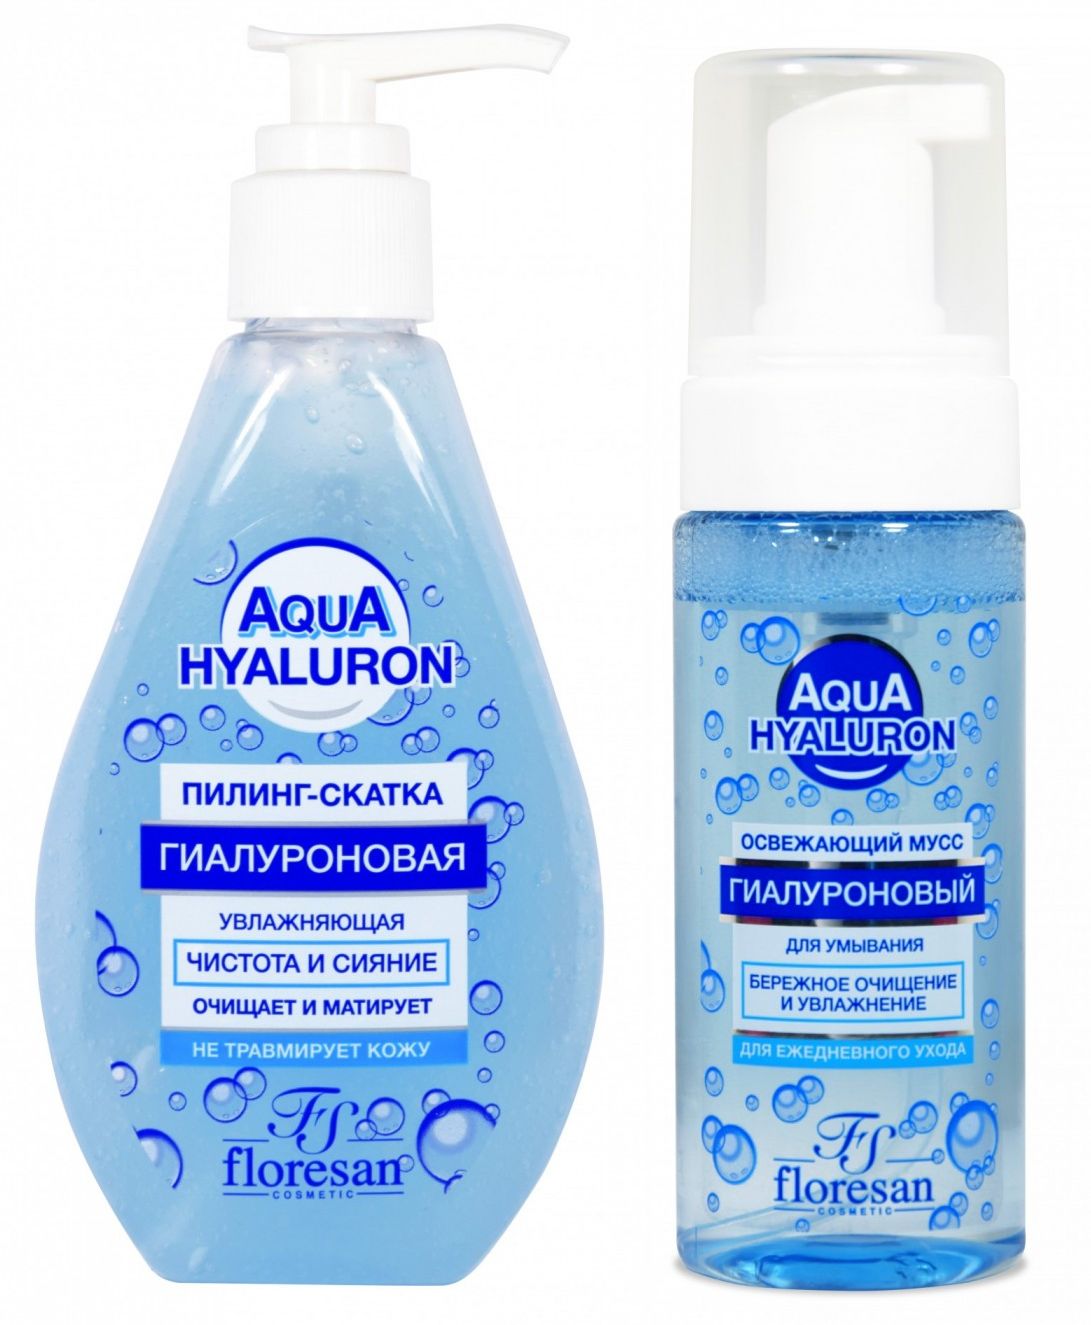 Набор Floresan Aqua Hyaluron пилинг-скатка и освежающий мусс для умывания 150 млх2 шт пилинг скатка farmstay